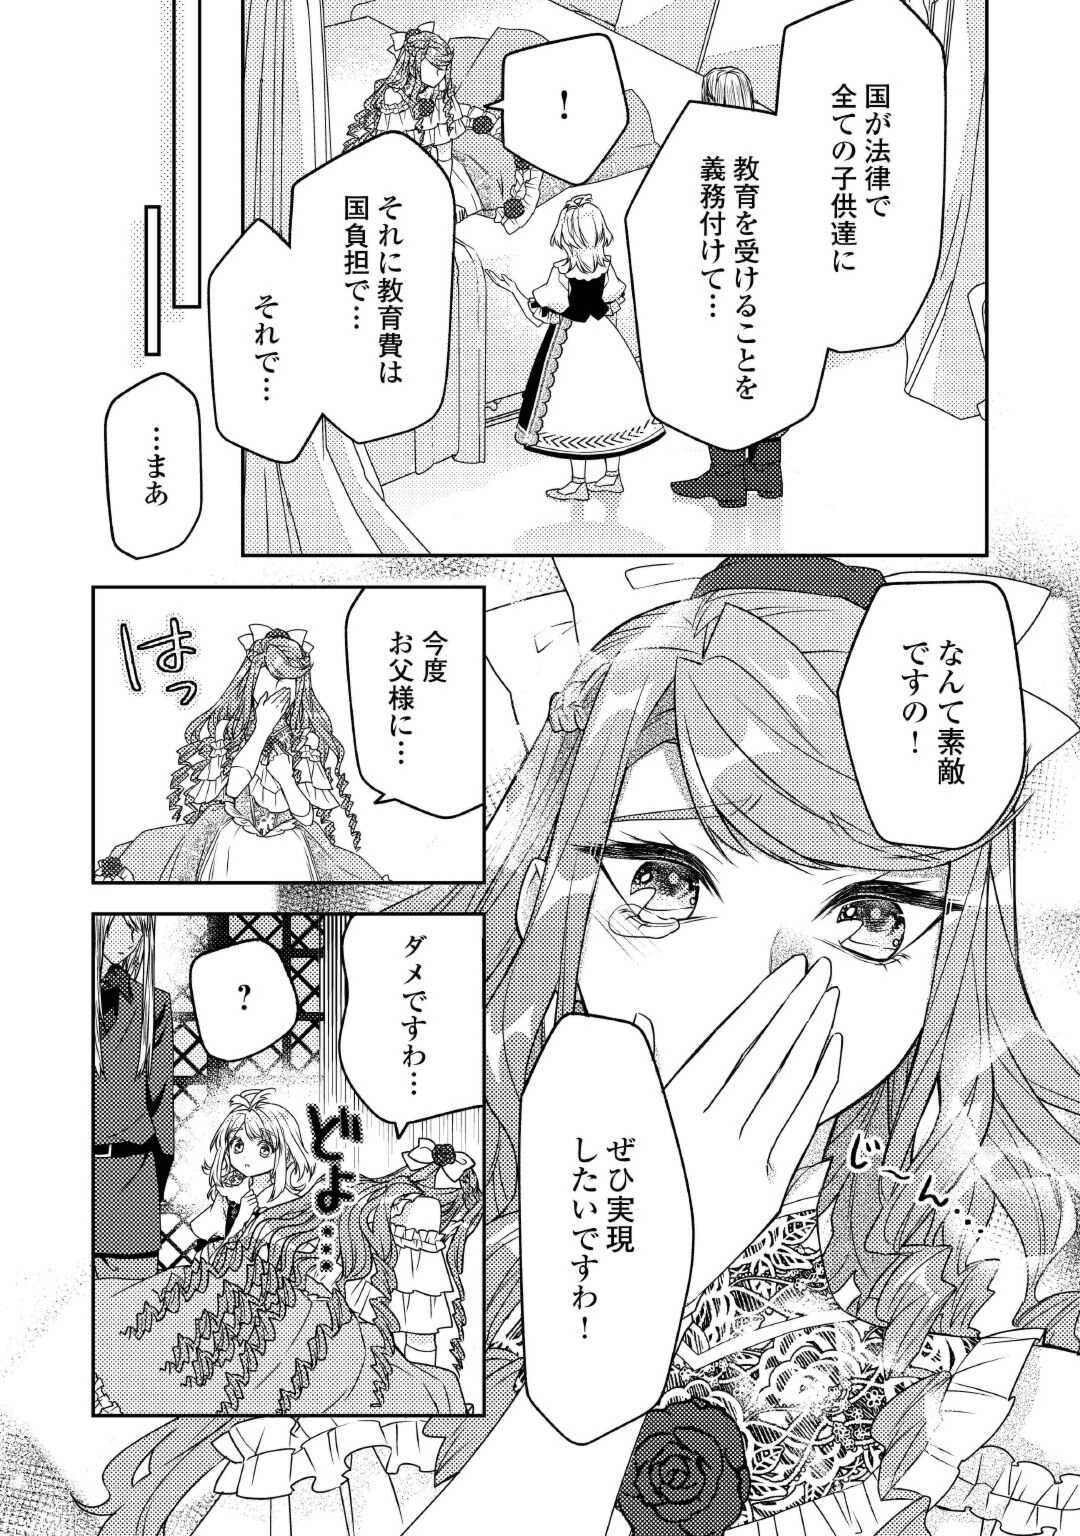 Toaru Chisana Mura No Chi Tona Tanya Ya San - Chapter 18 - Page 16